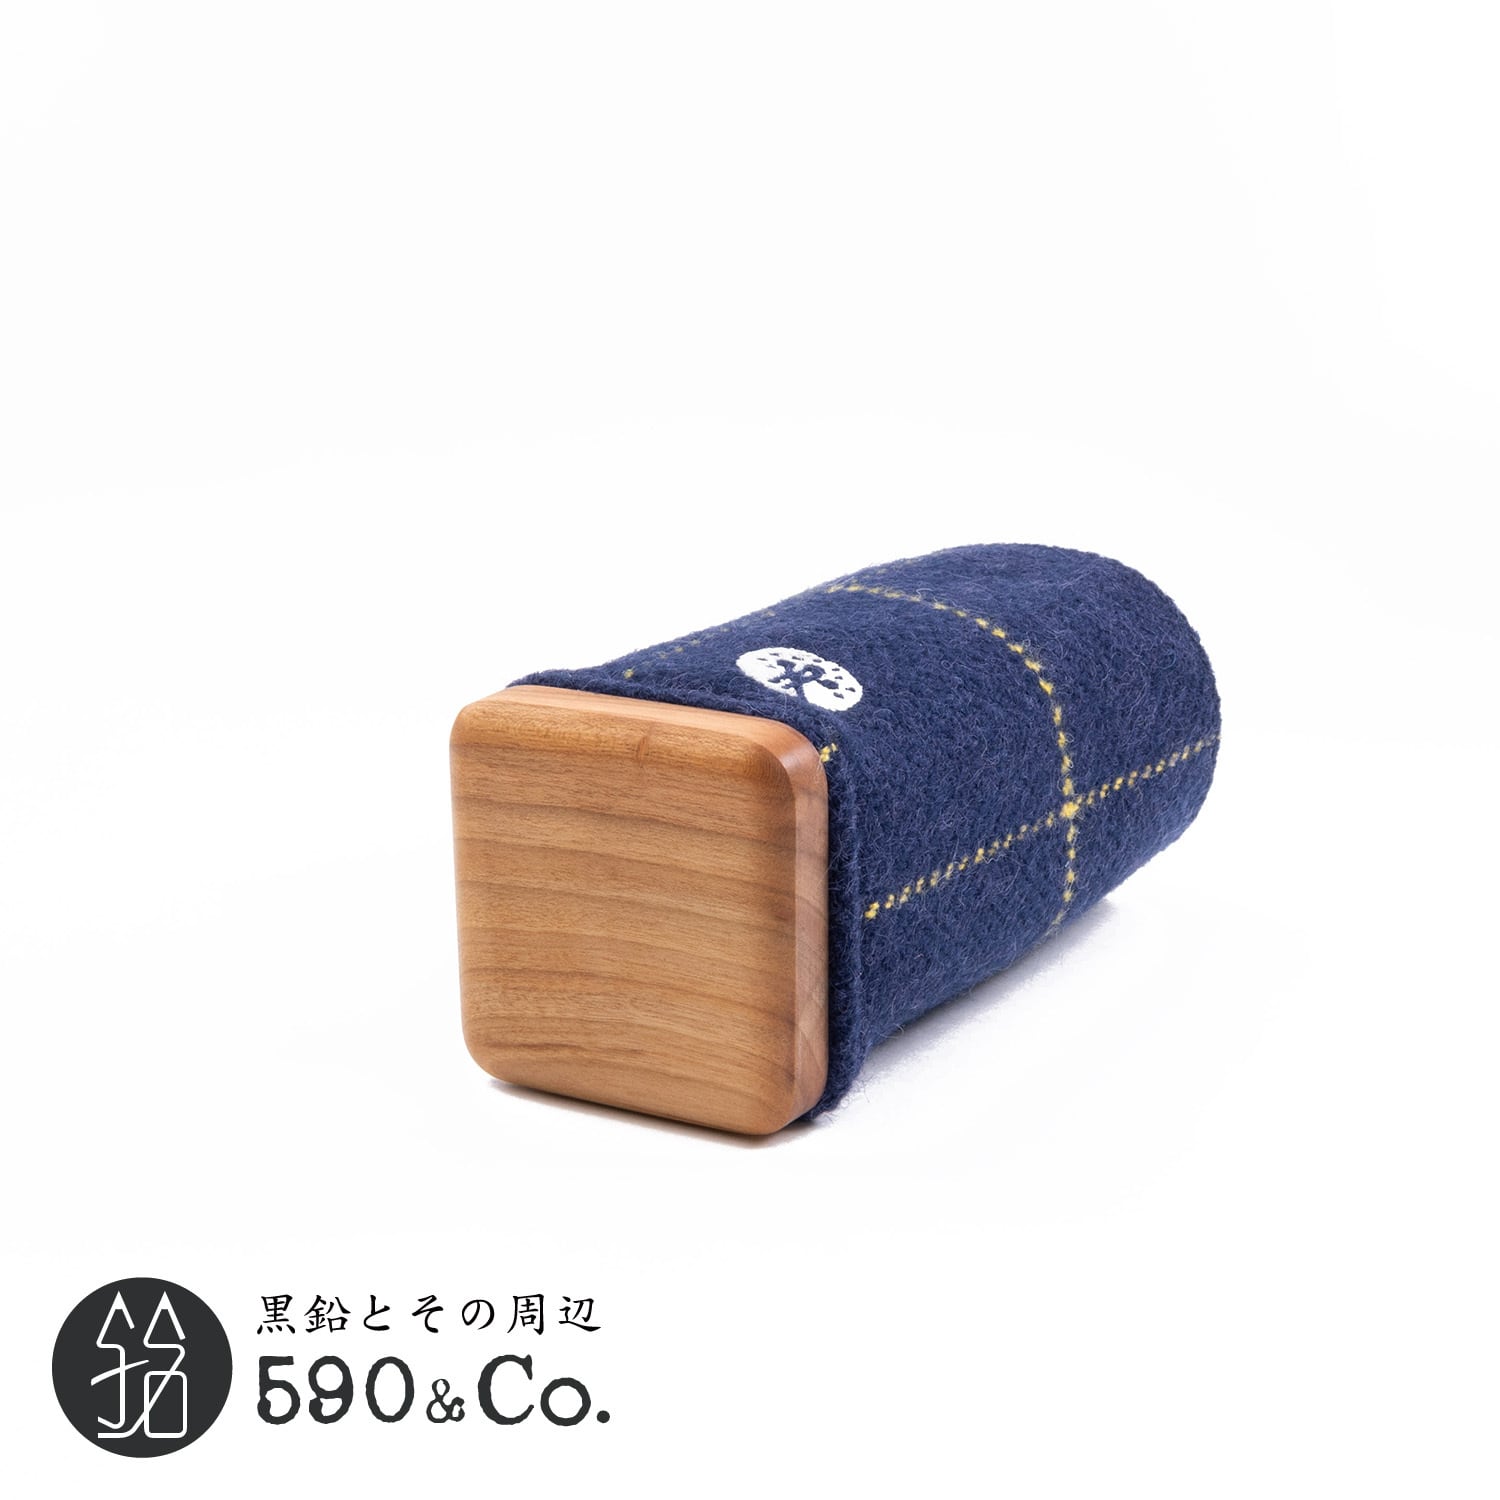 【キナリ木工所】別注 PENSTAND Upholstery fabrics×wood (Ribaco RB337ネイビー/イエロー)  590Co.